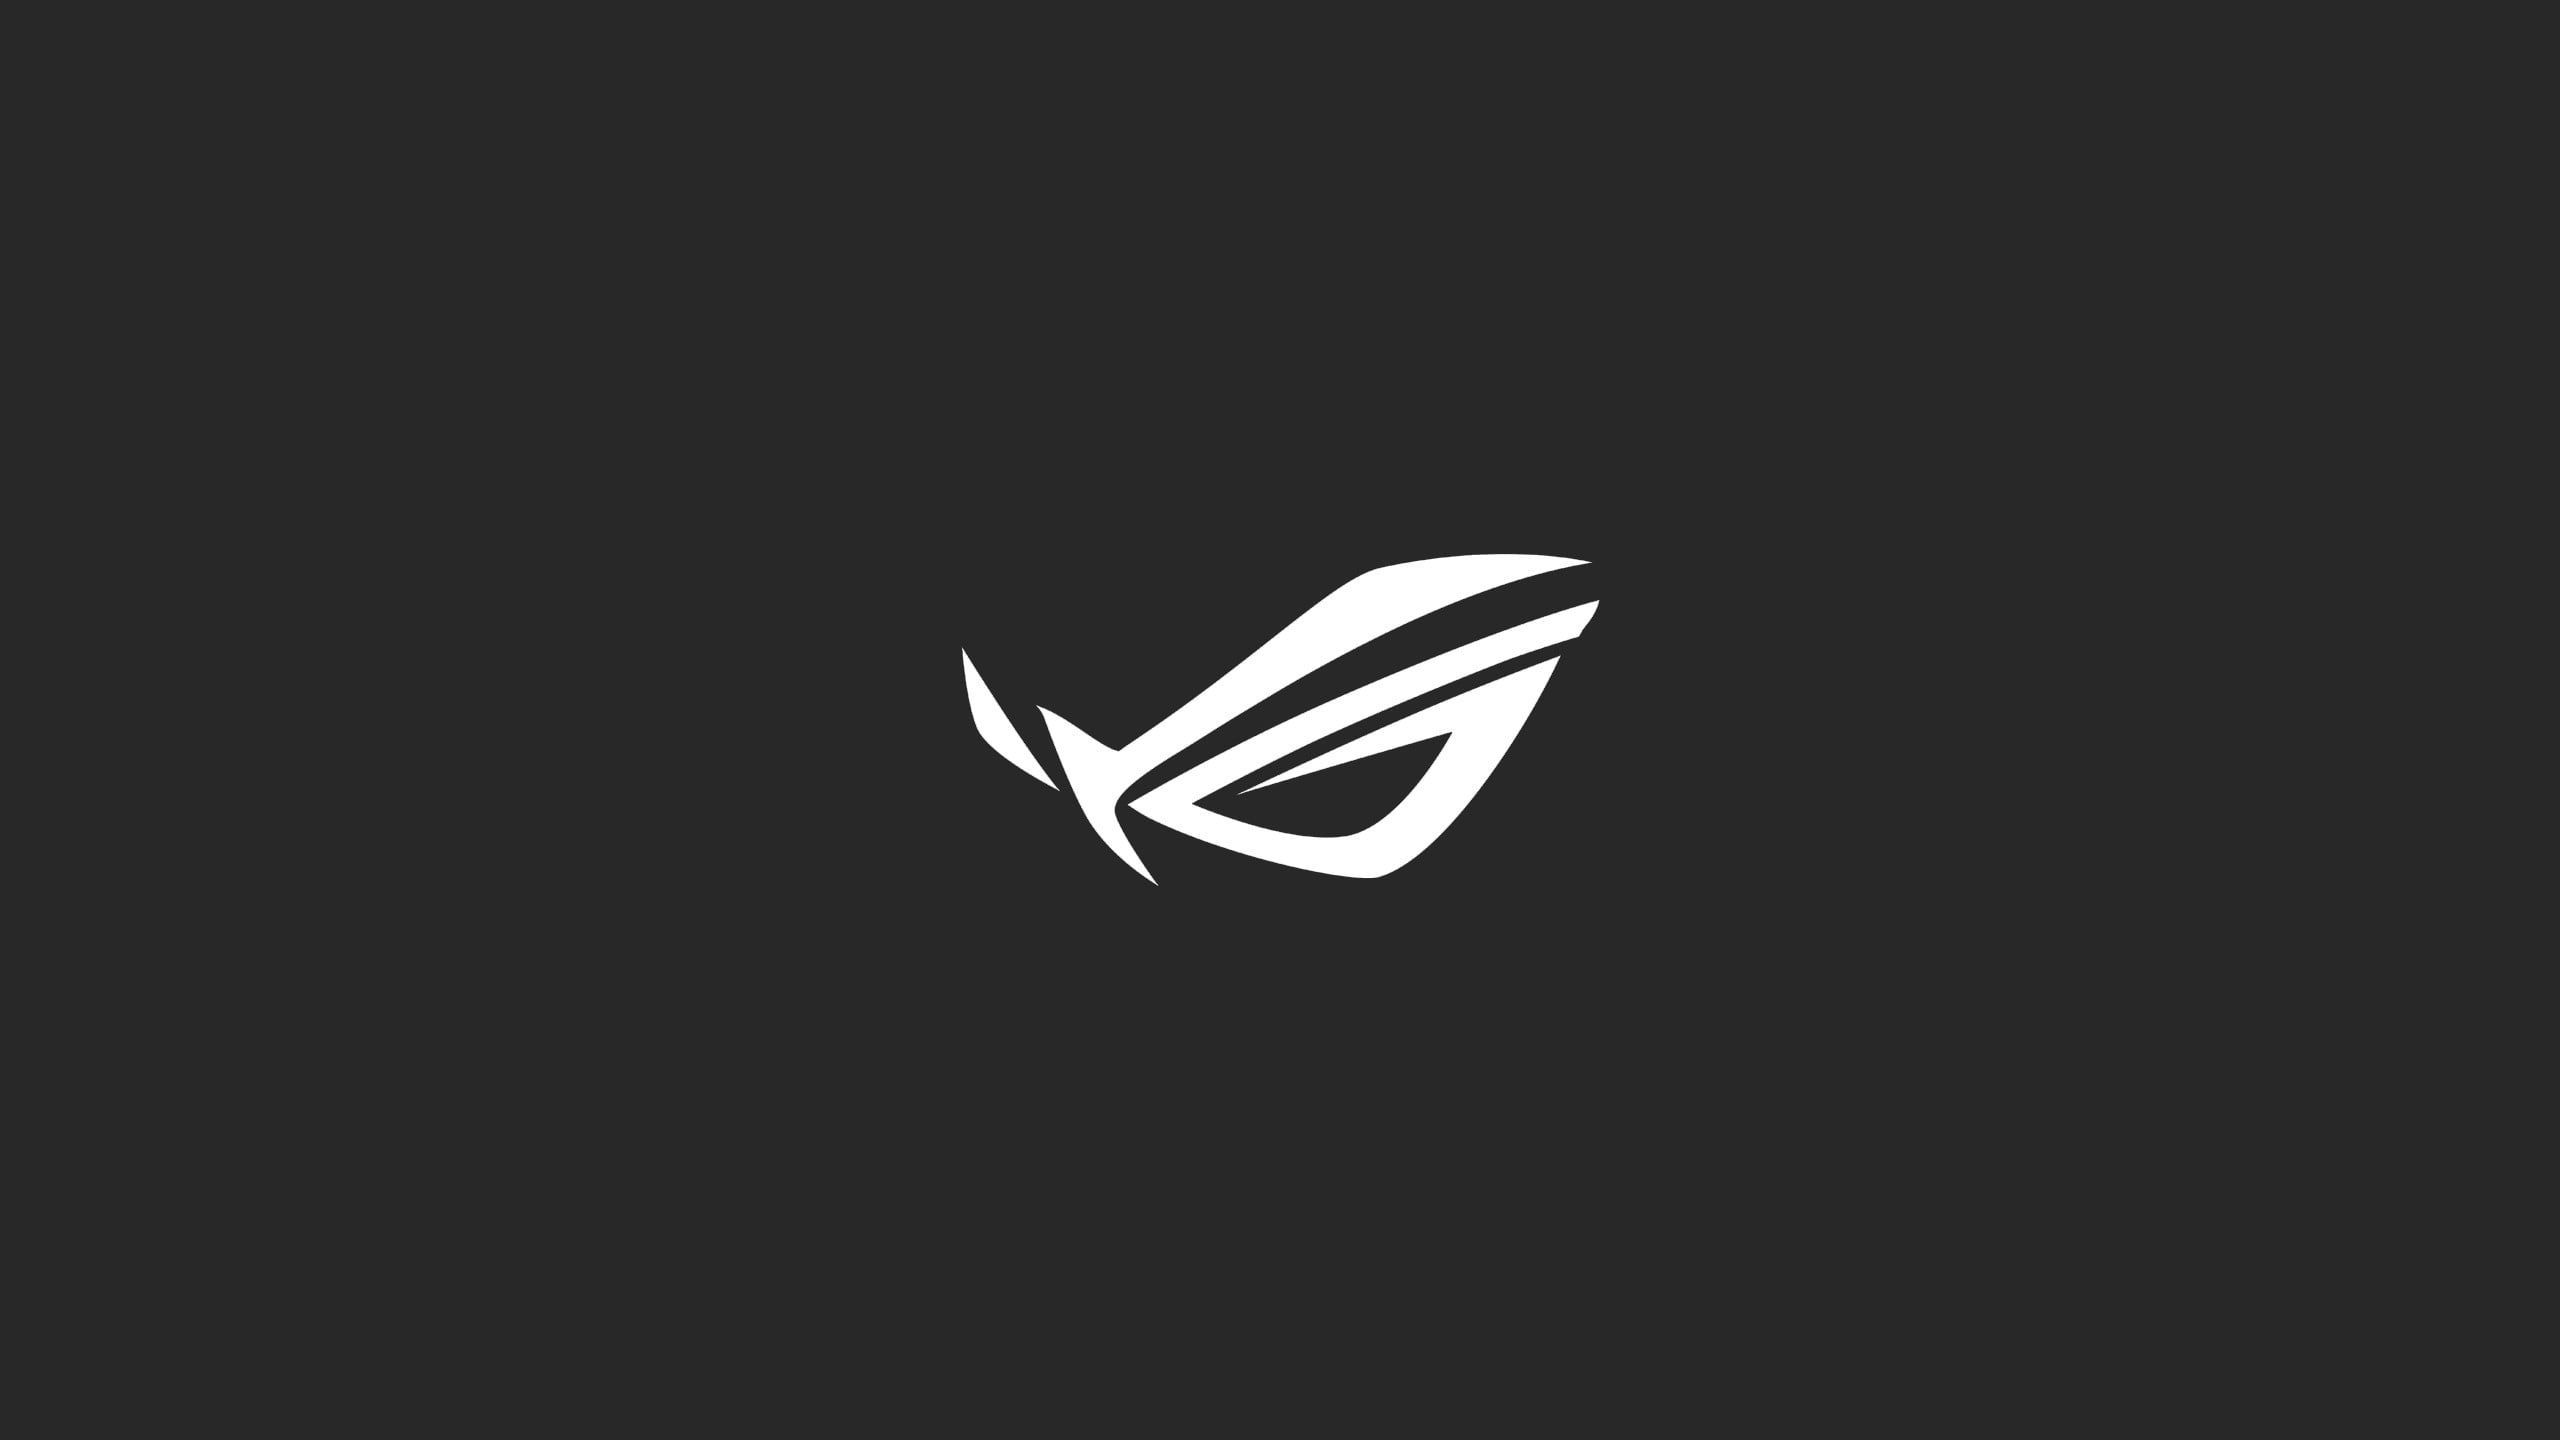 Asus ROG logo, Republic of Gamers, minimalism, studio shot, black background. Asus rog logo, Wallpaper asus rog, Wallpaper asus